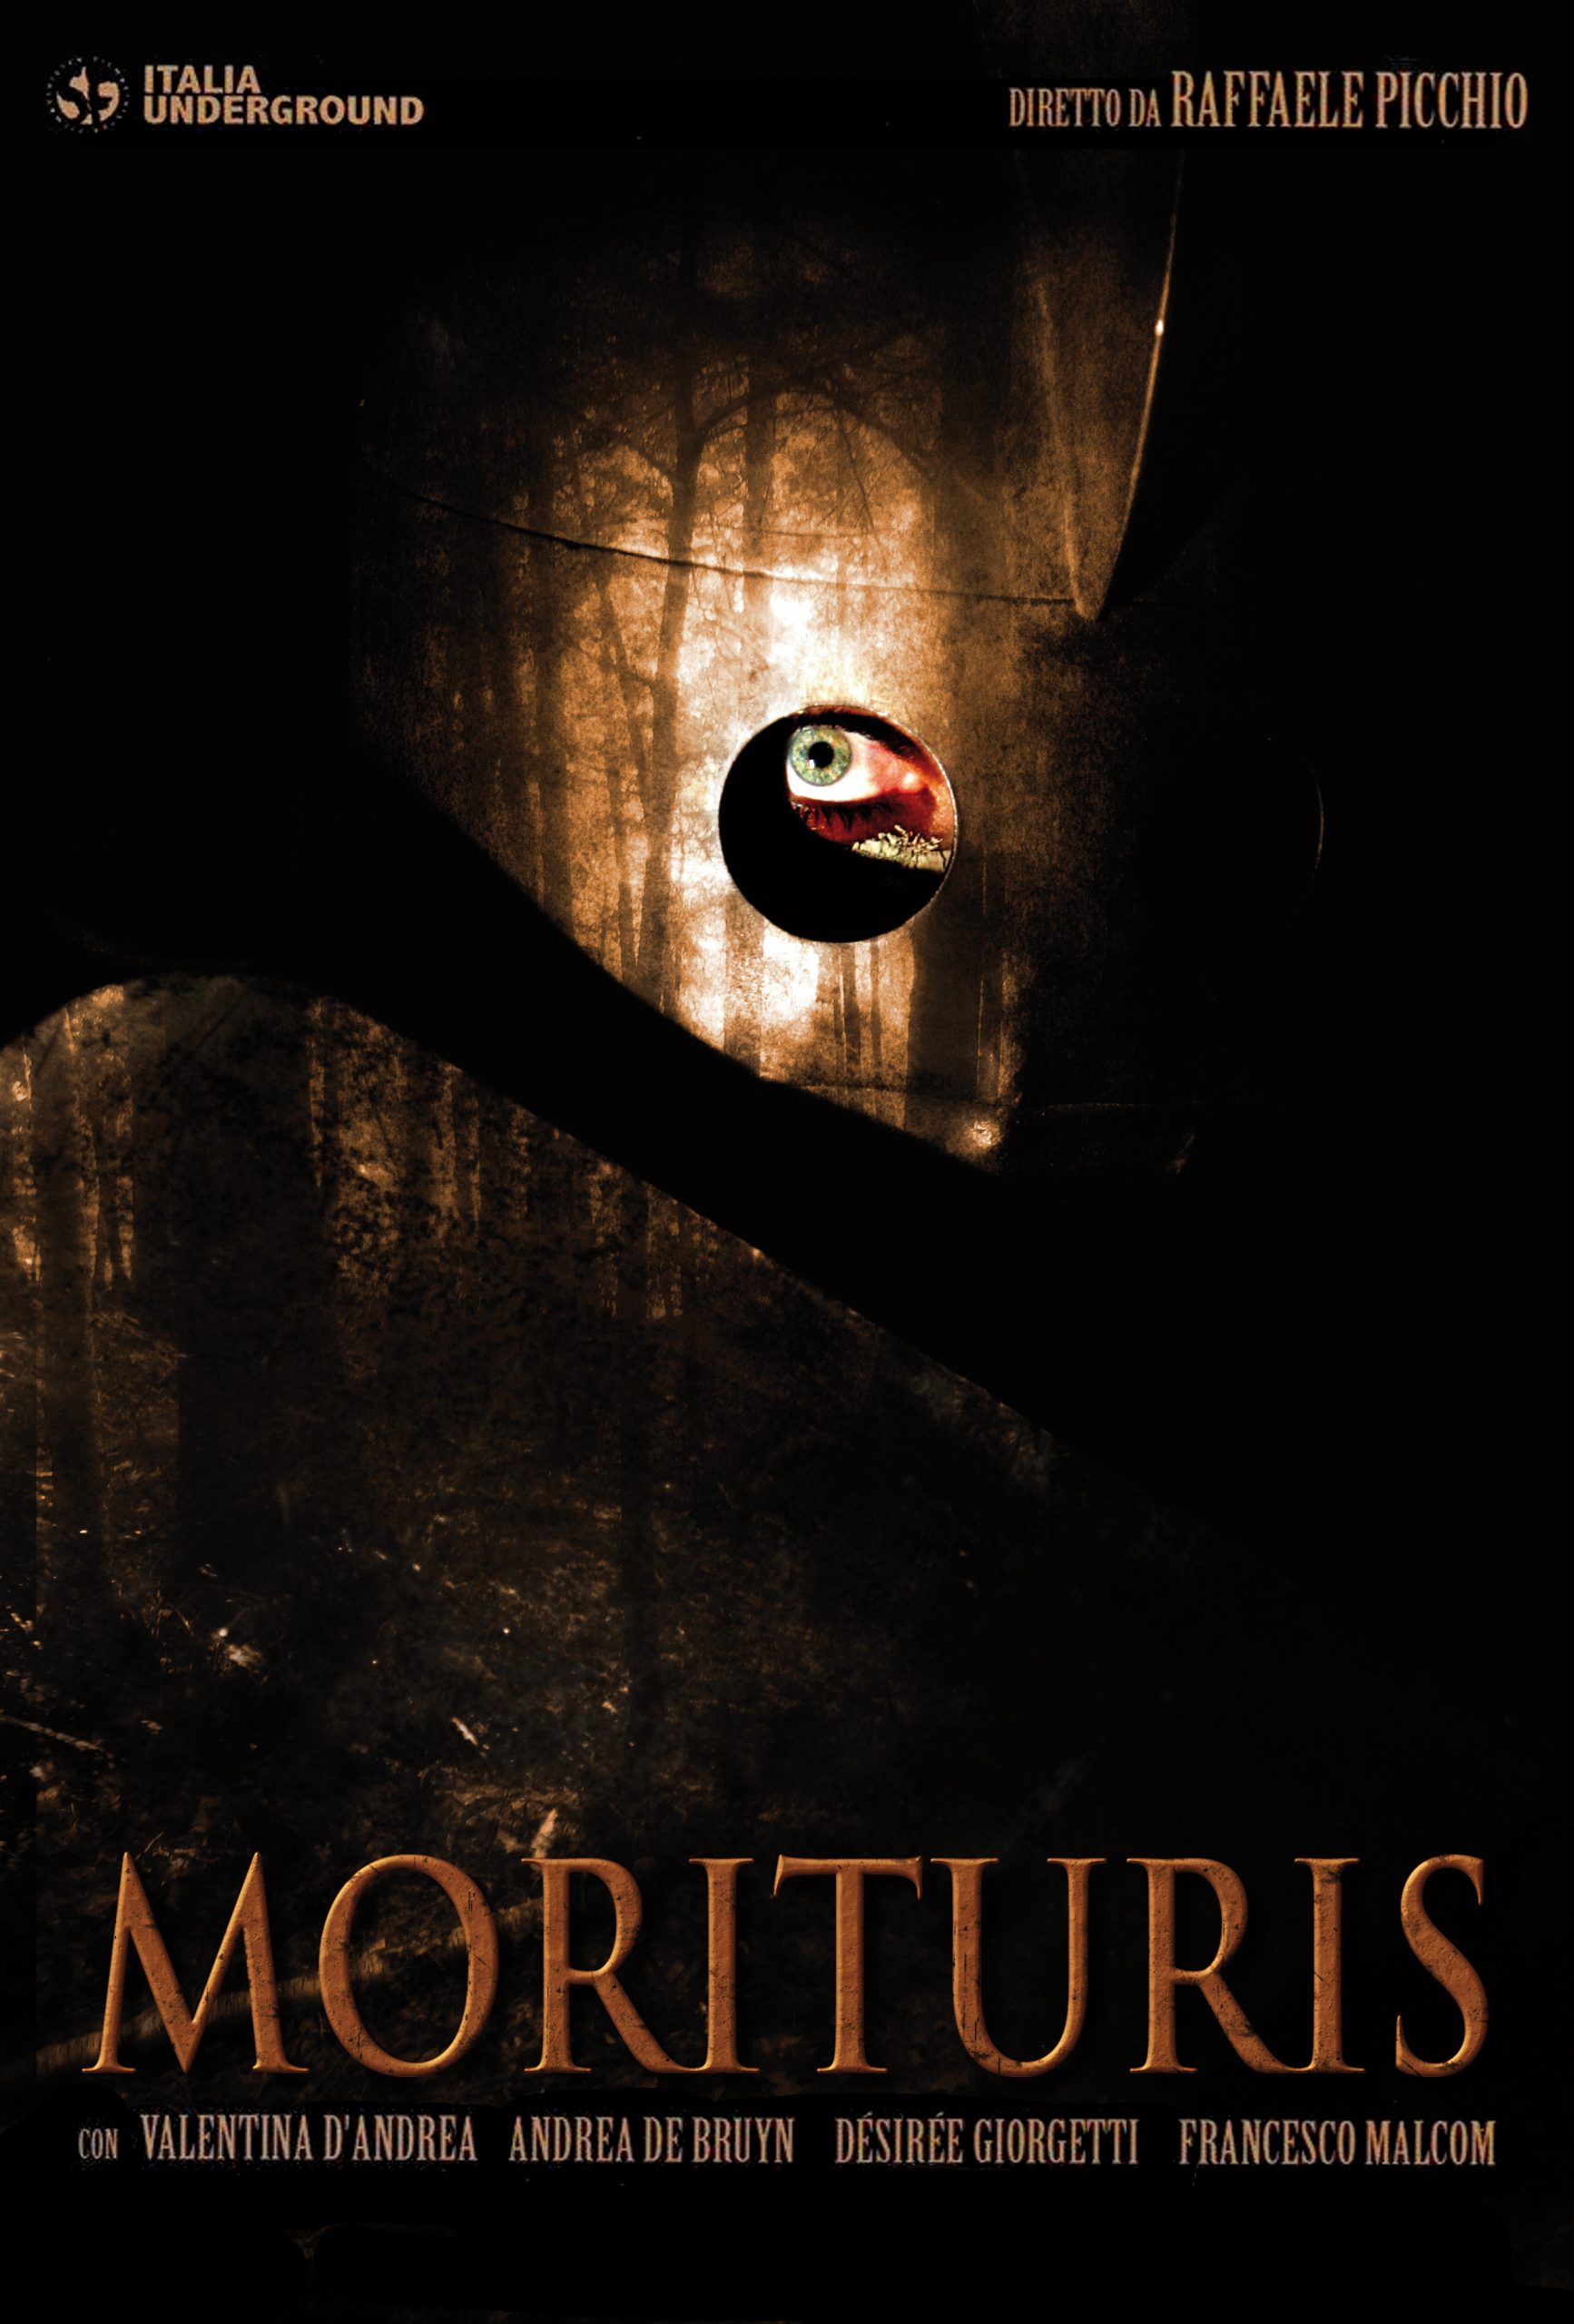 Morituris [HD] (2011)